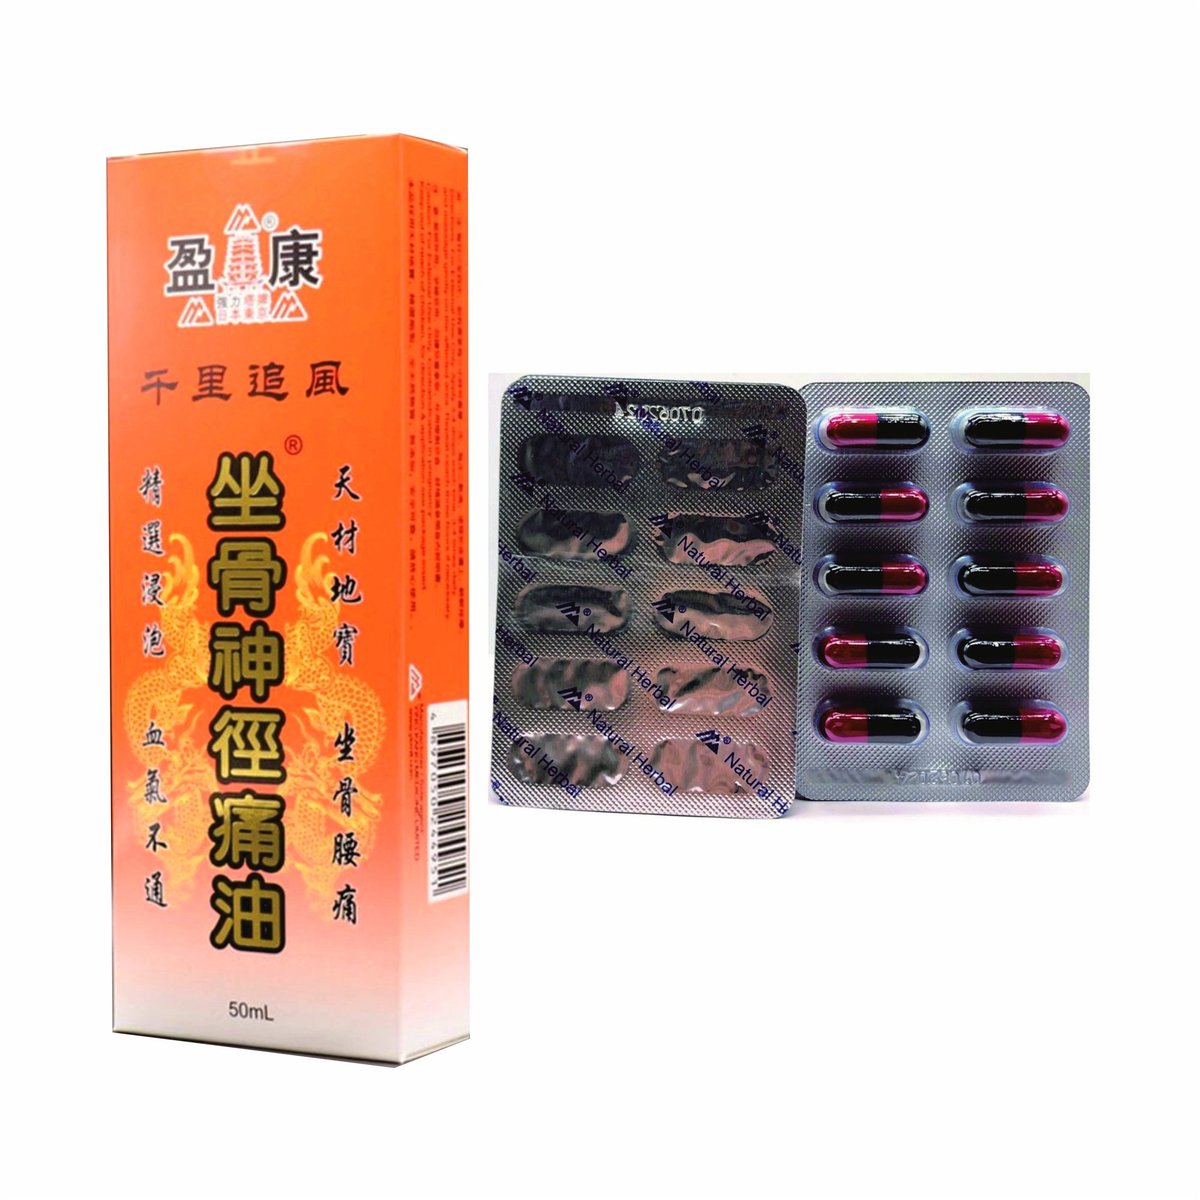 Strong Yan Bingqing (10 X6 per row) + Ischia sacral pain oil (50ML)